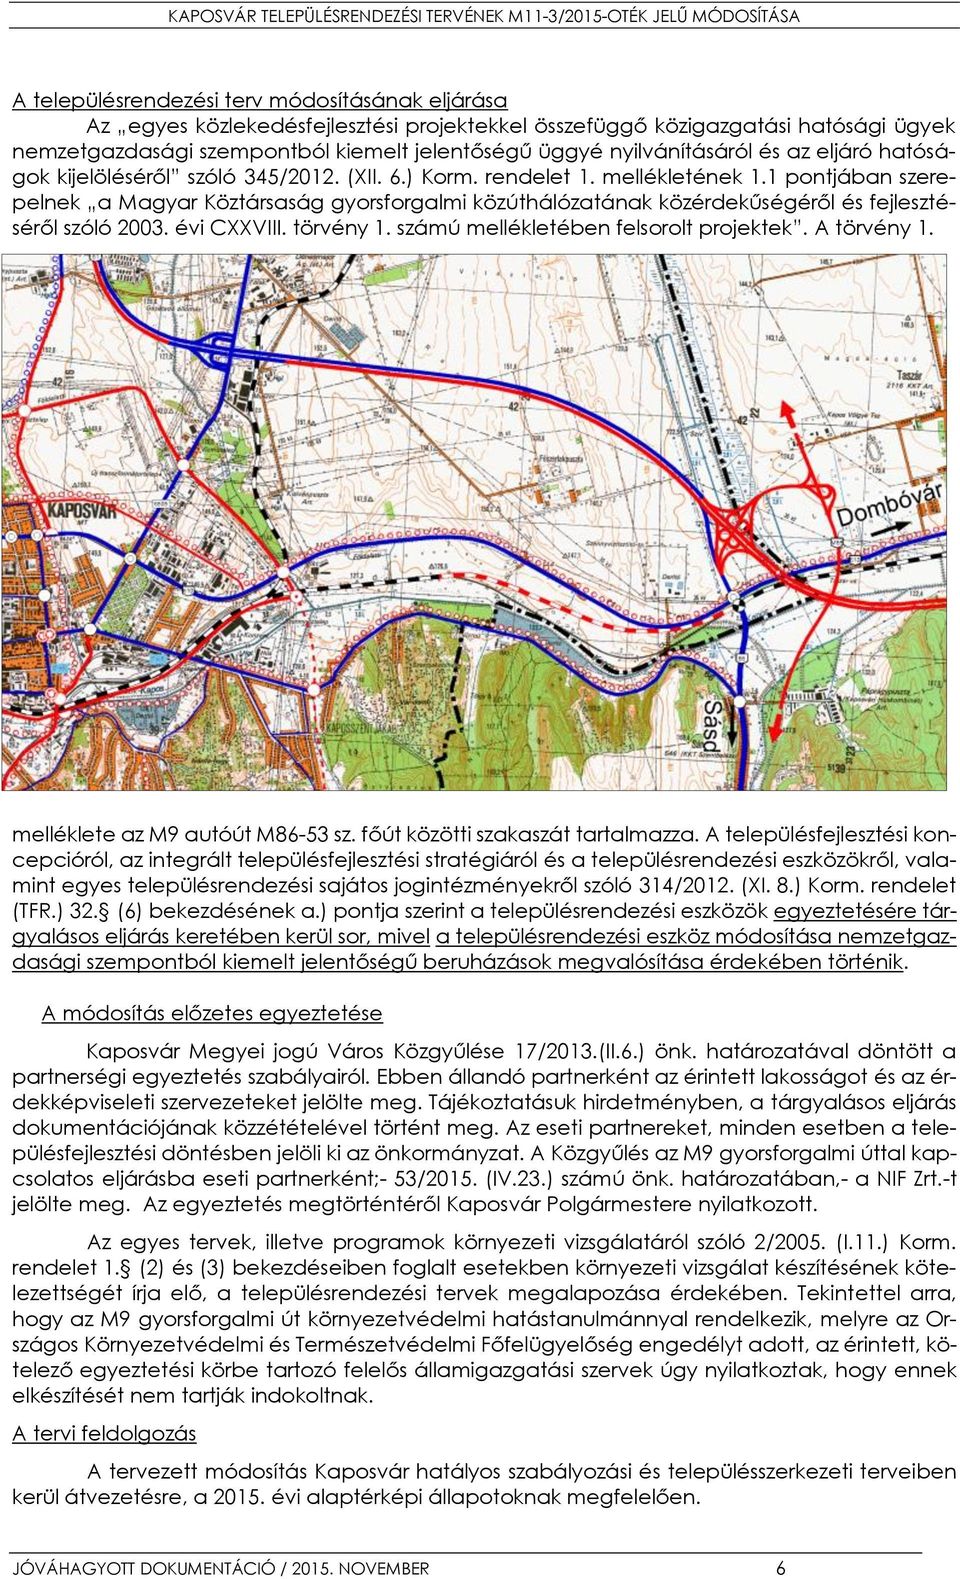 1 pontjában szerepelnek a Magyar Köztársaság gyorsforgalmi közúthálózatának közérdekűségéről és fejlesztéséről szóló 2003. évi CXXVIII. törvény 1. számú mellékletében felsorolt projektek. A törvény 1.